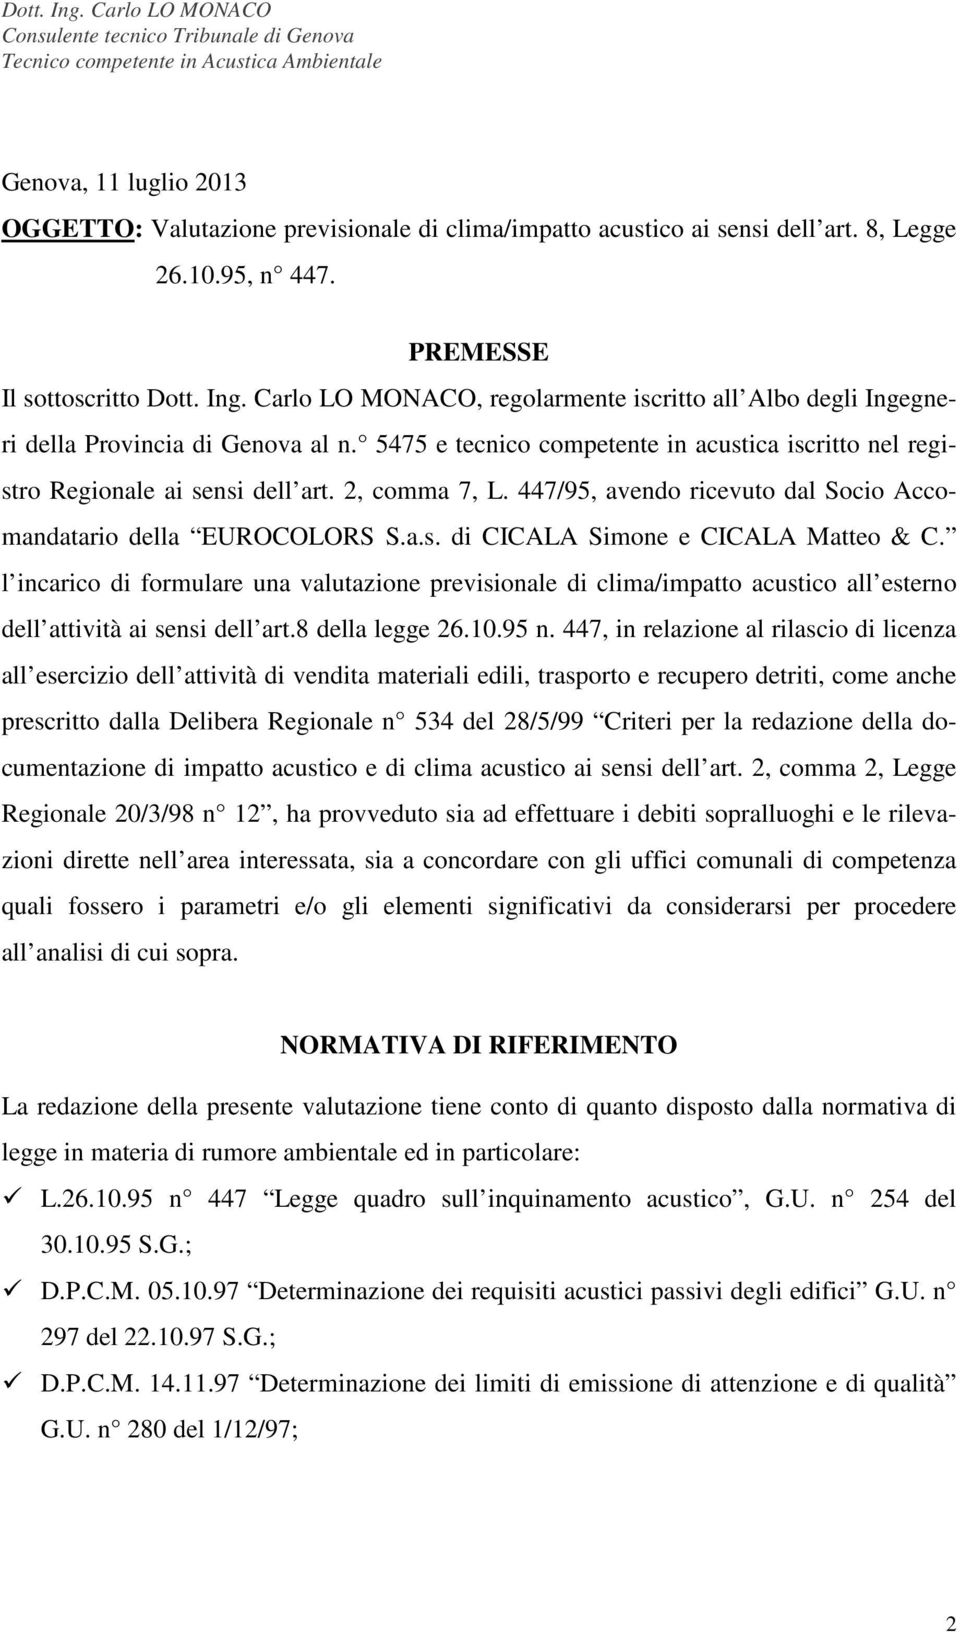 447/95, avendo ricevuto dal Socio Accomandatario della EUROCOLORS S.a.s. di CICALA Simone e CICALA Matteo & C.